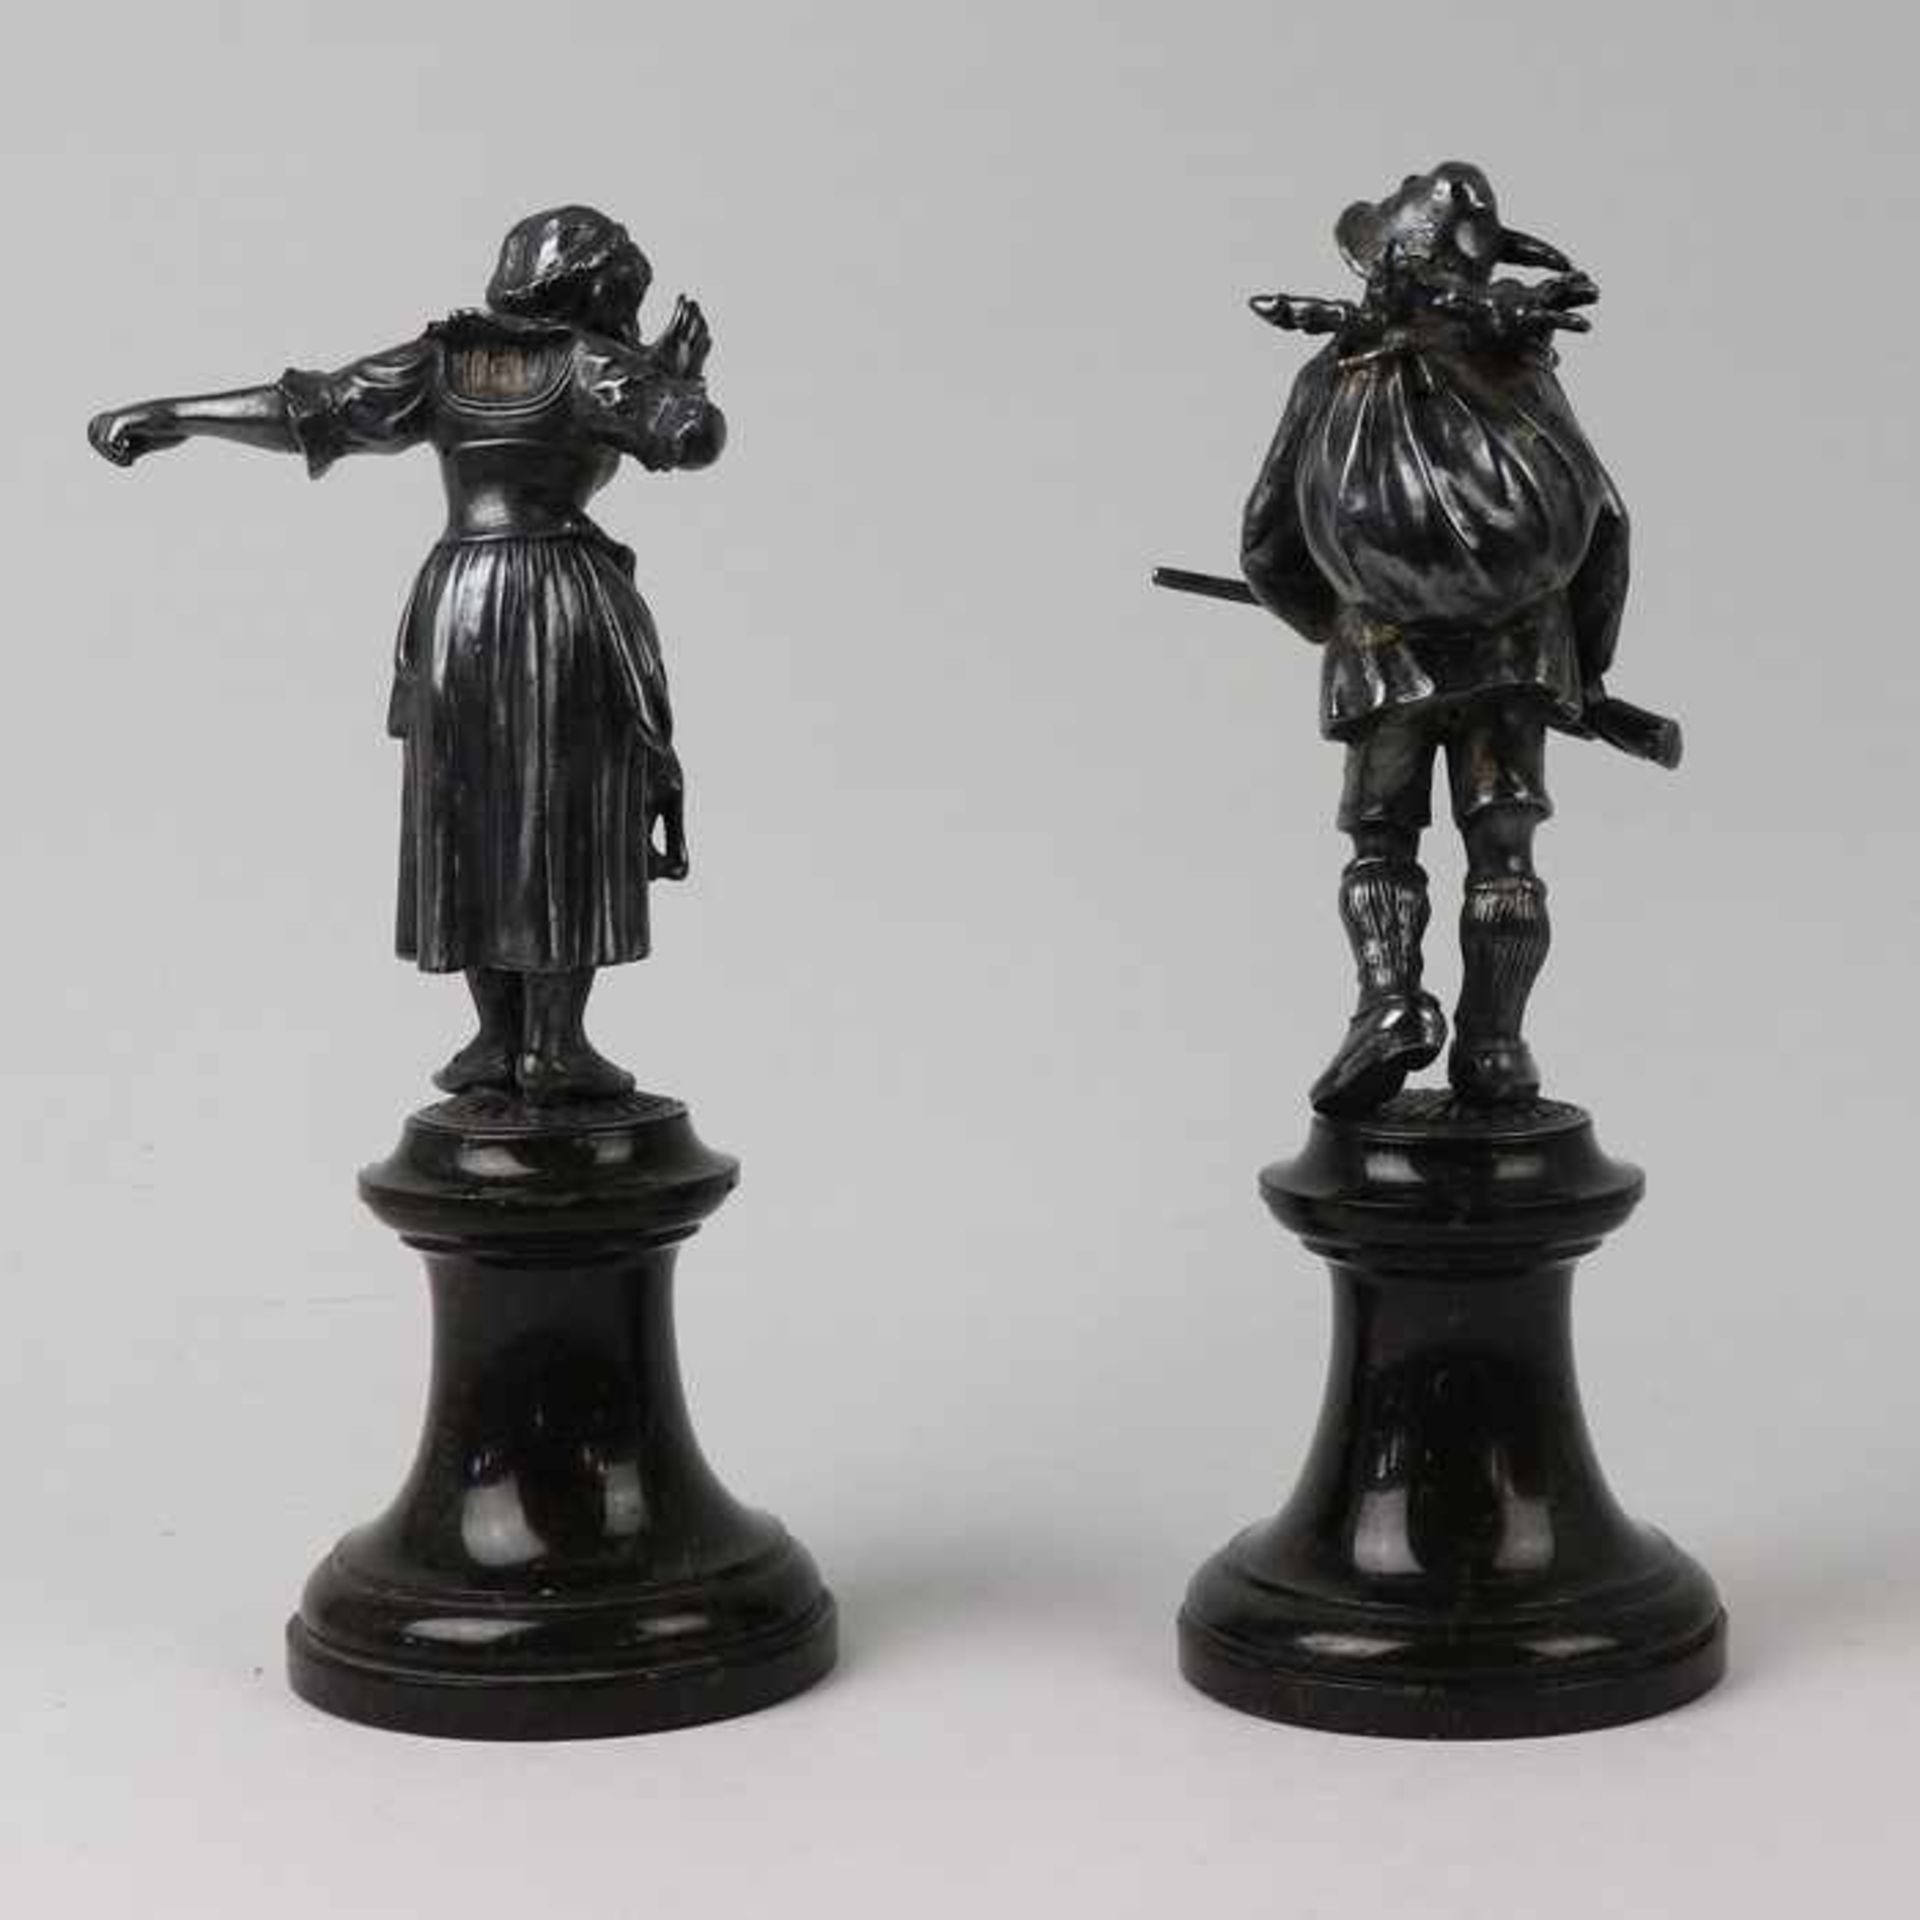 Figurenpaarum 1910/20, Metall, versi., 2 vollplastische Figuren, ein Jäger m. Beute ein Gewehr in - Bild 6 aus 6